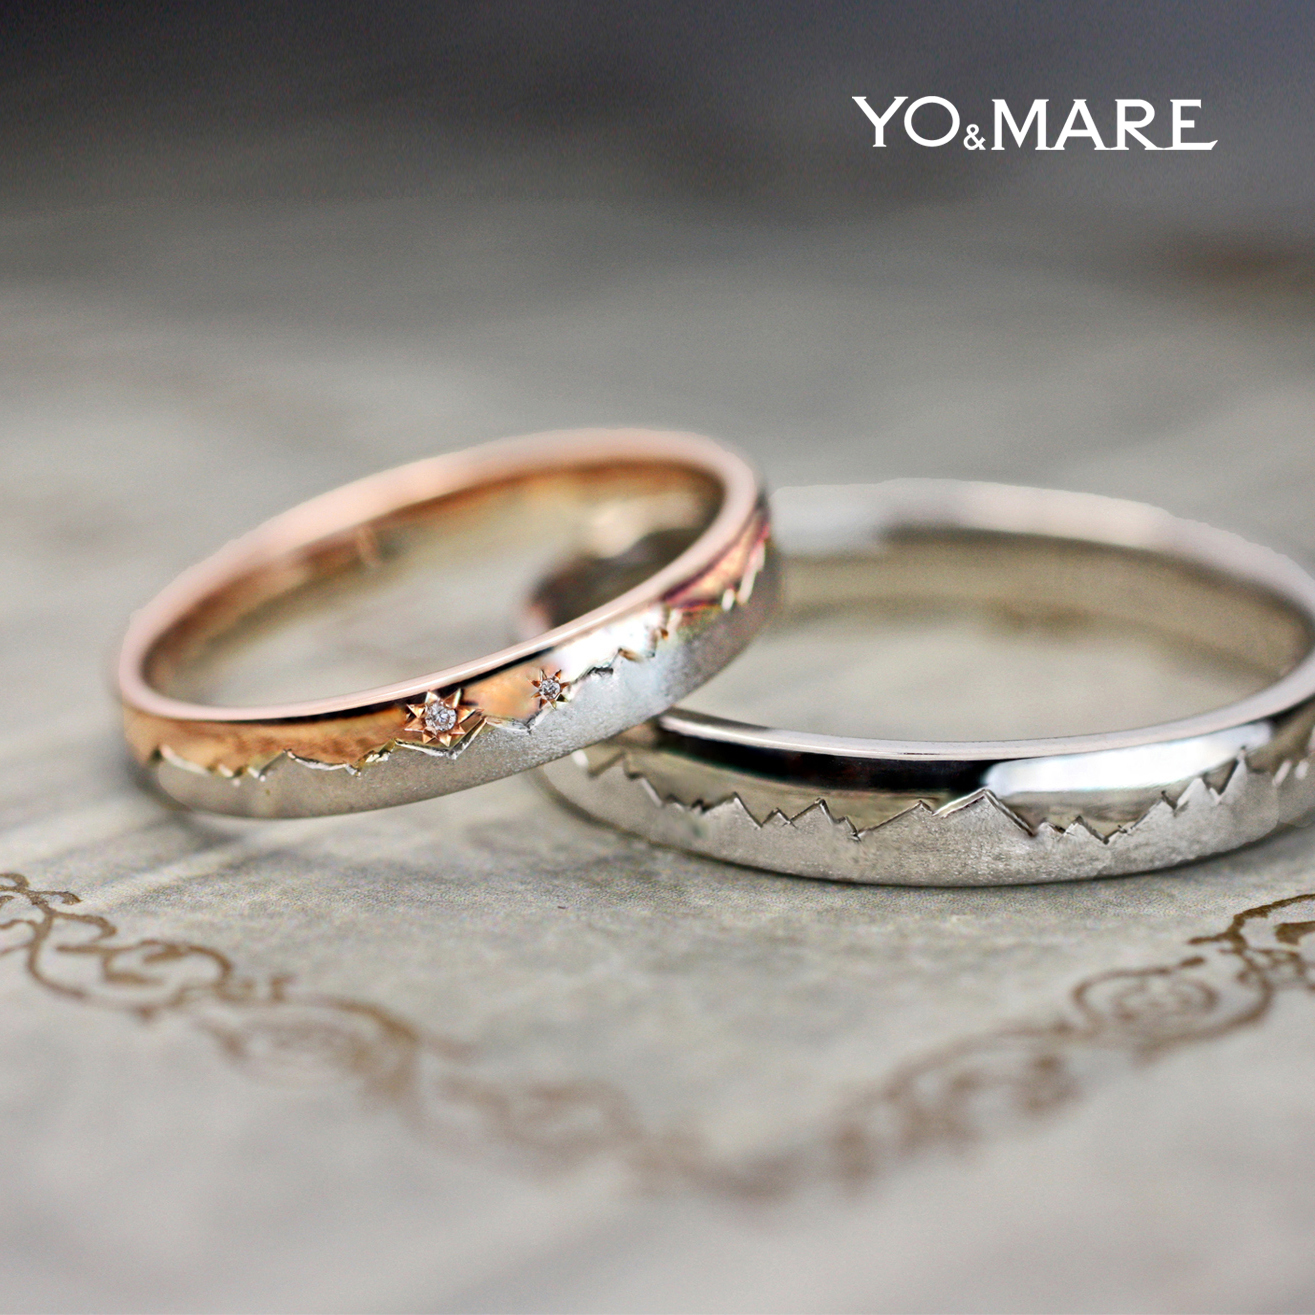 北アルプスをピンクゴールドとプラチナで結婚指輪オーダー作品に表現 千葉 柏で結婚指輪をオーダーメイドするならヨーアンドマーレ